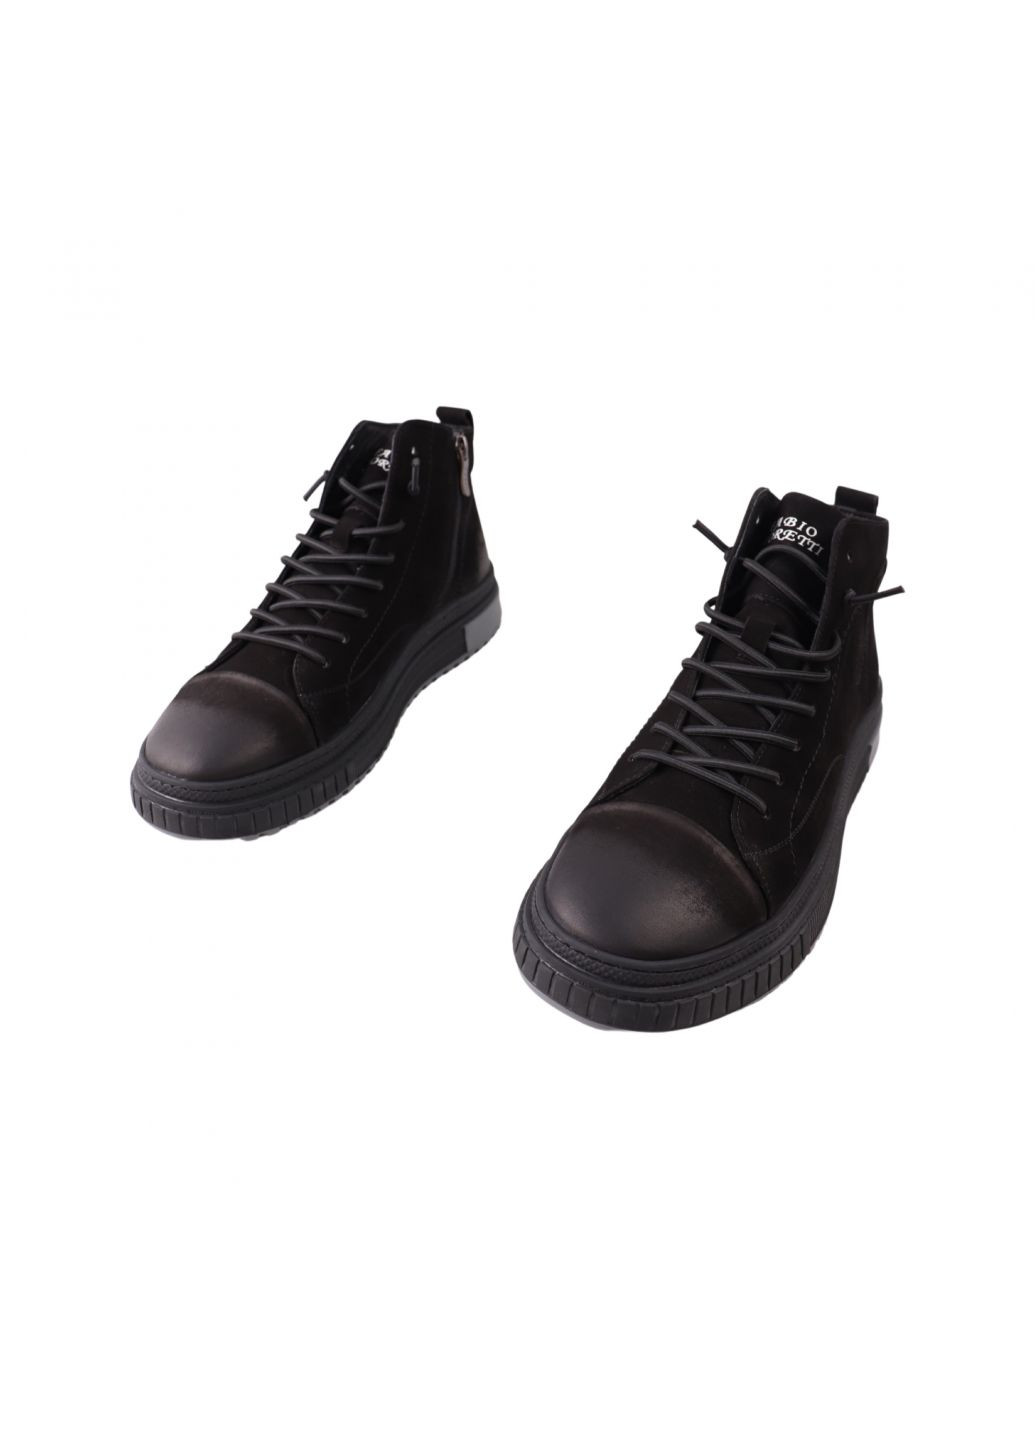 Черные ботинки мужские черные натуральный нубук Brooman